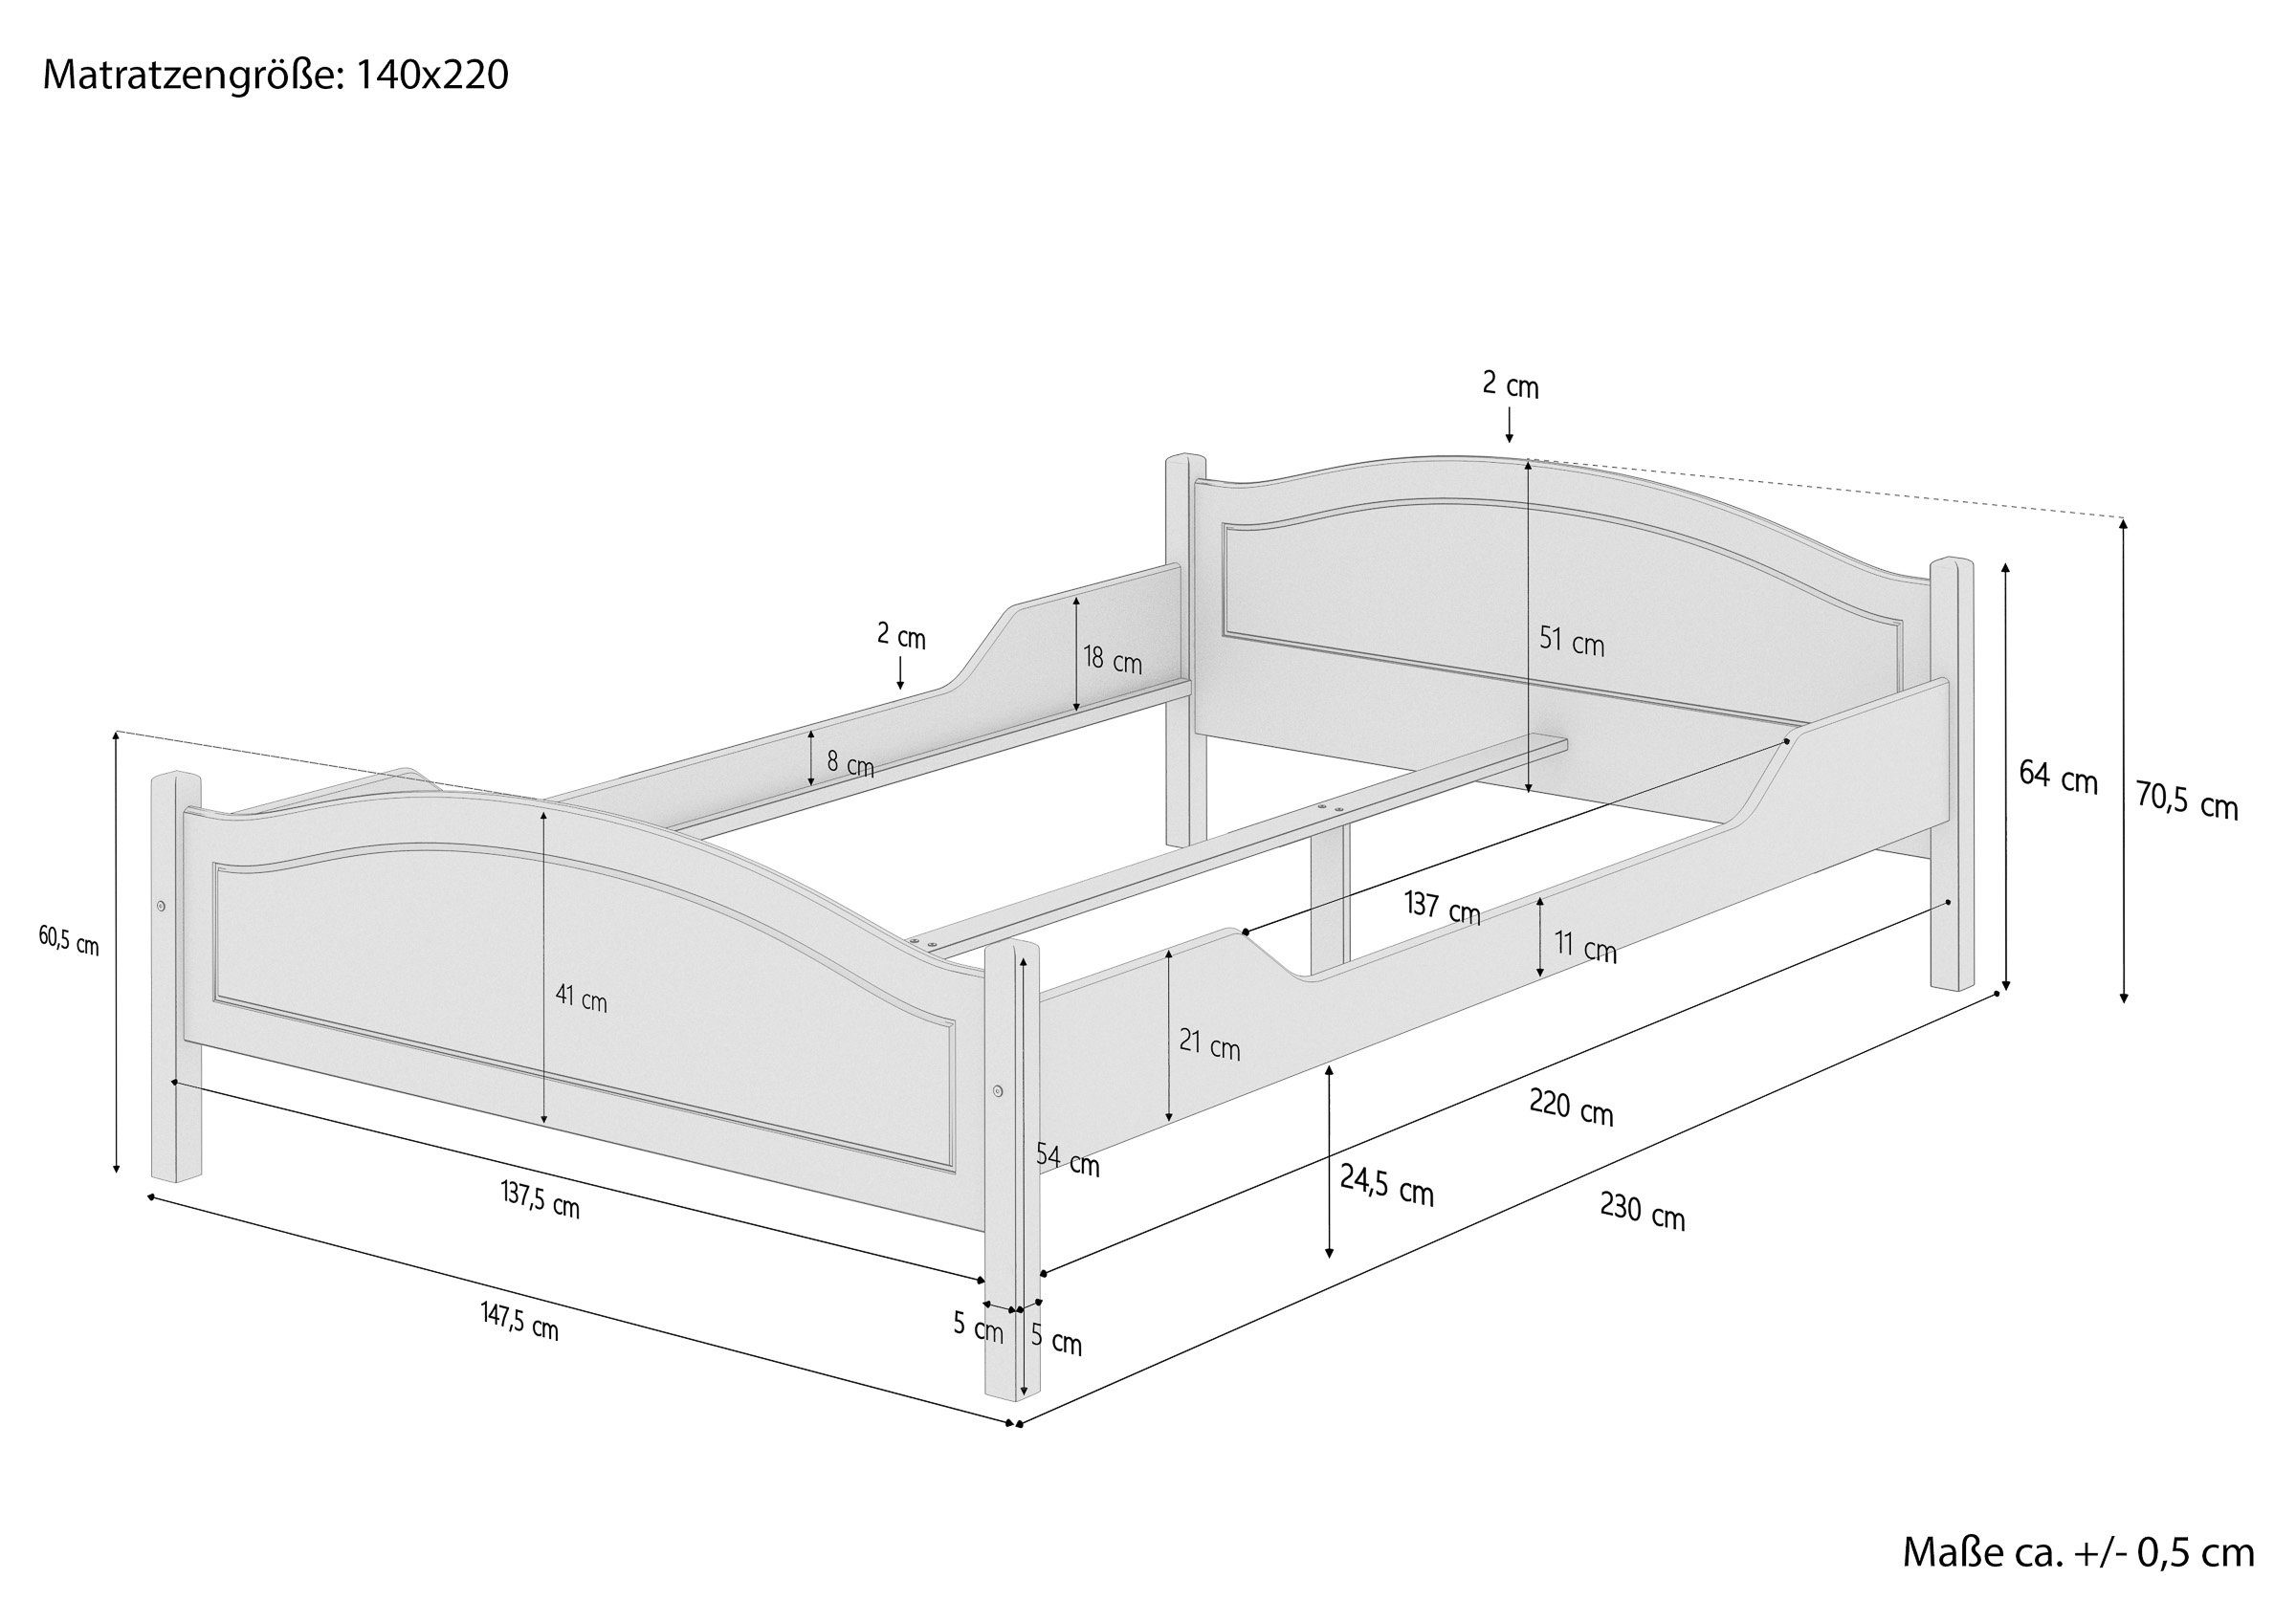 massiv ERST-HOLZ 140x220 Zubehör Kieferholzbett Überlanges Doppelbett Bett Kieferfarblos wählbar, lackiert